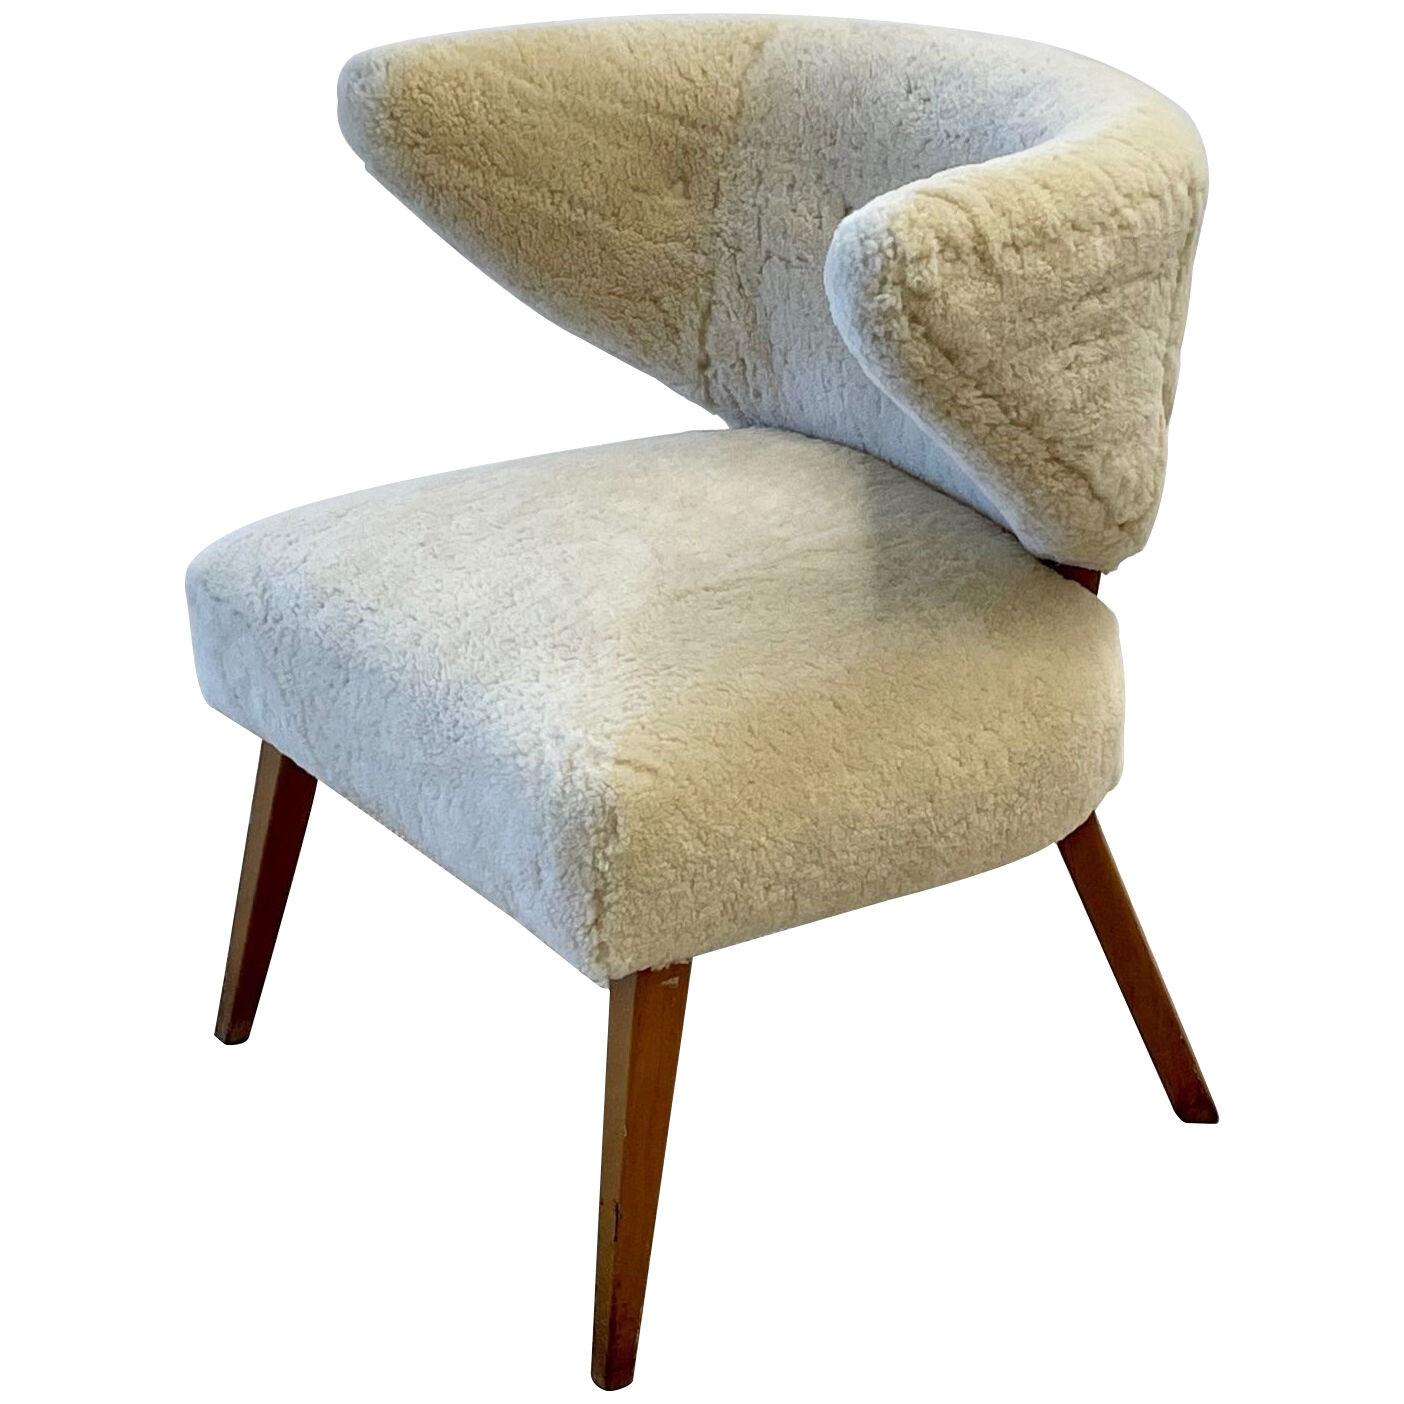 Mid Century Modern Wing / Slipper Chair, Otto Schultz Style, Sheepskin